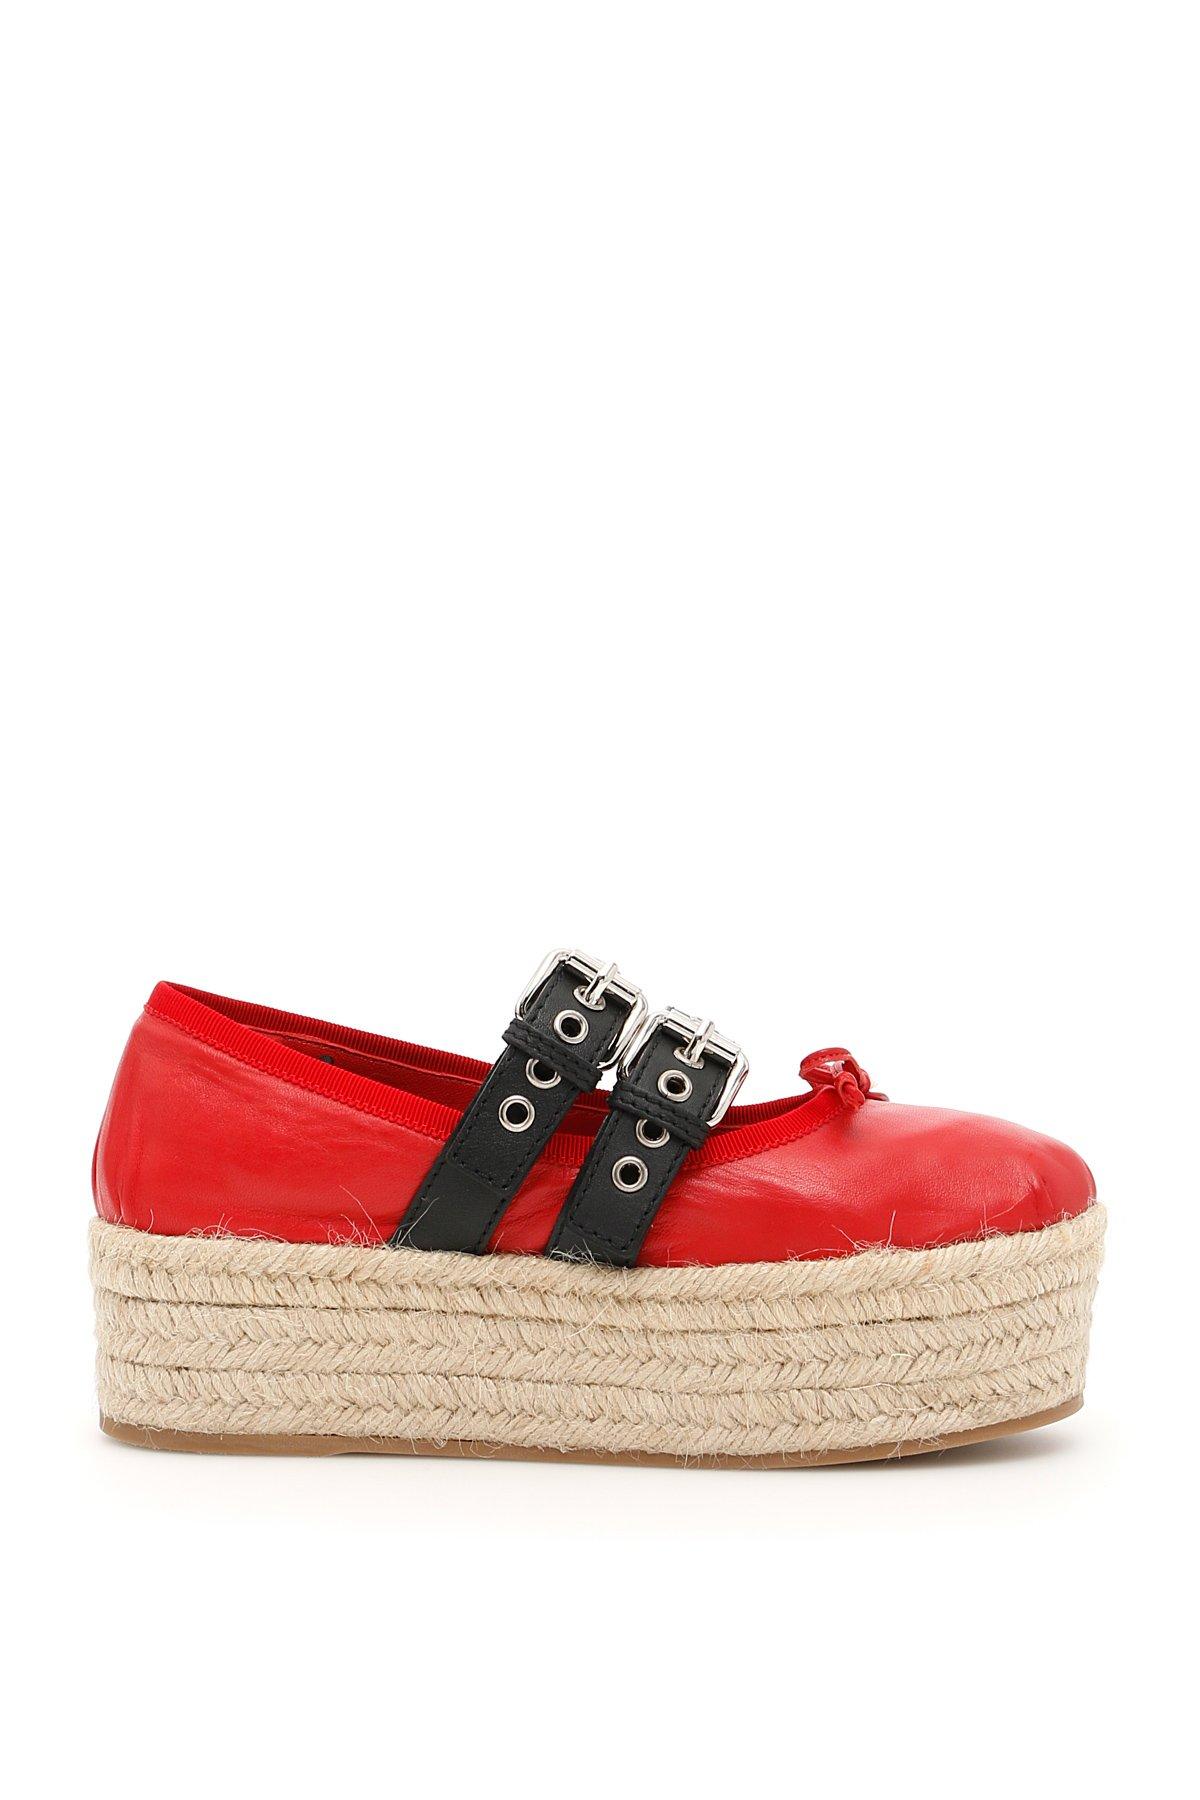 Henstilling Spil Centimeter Miu Miu Platform Buckled Ballerina Shoes In Red | ModeSens